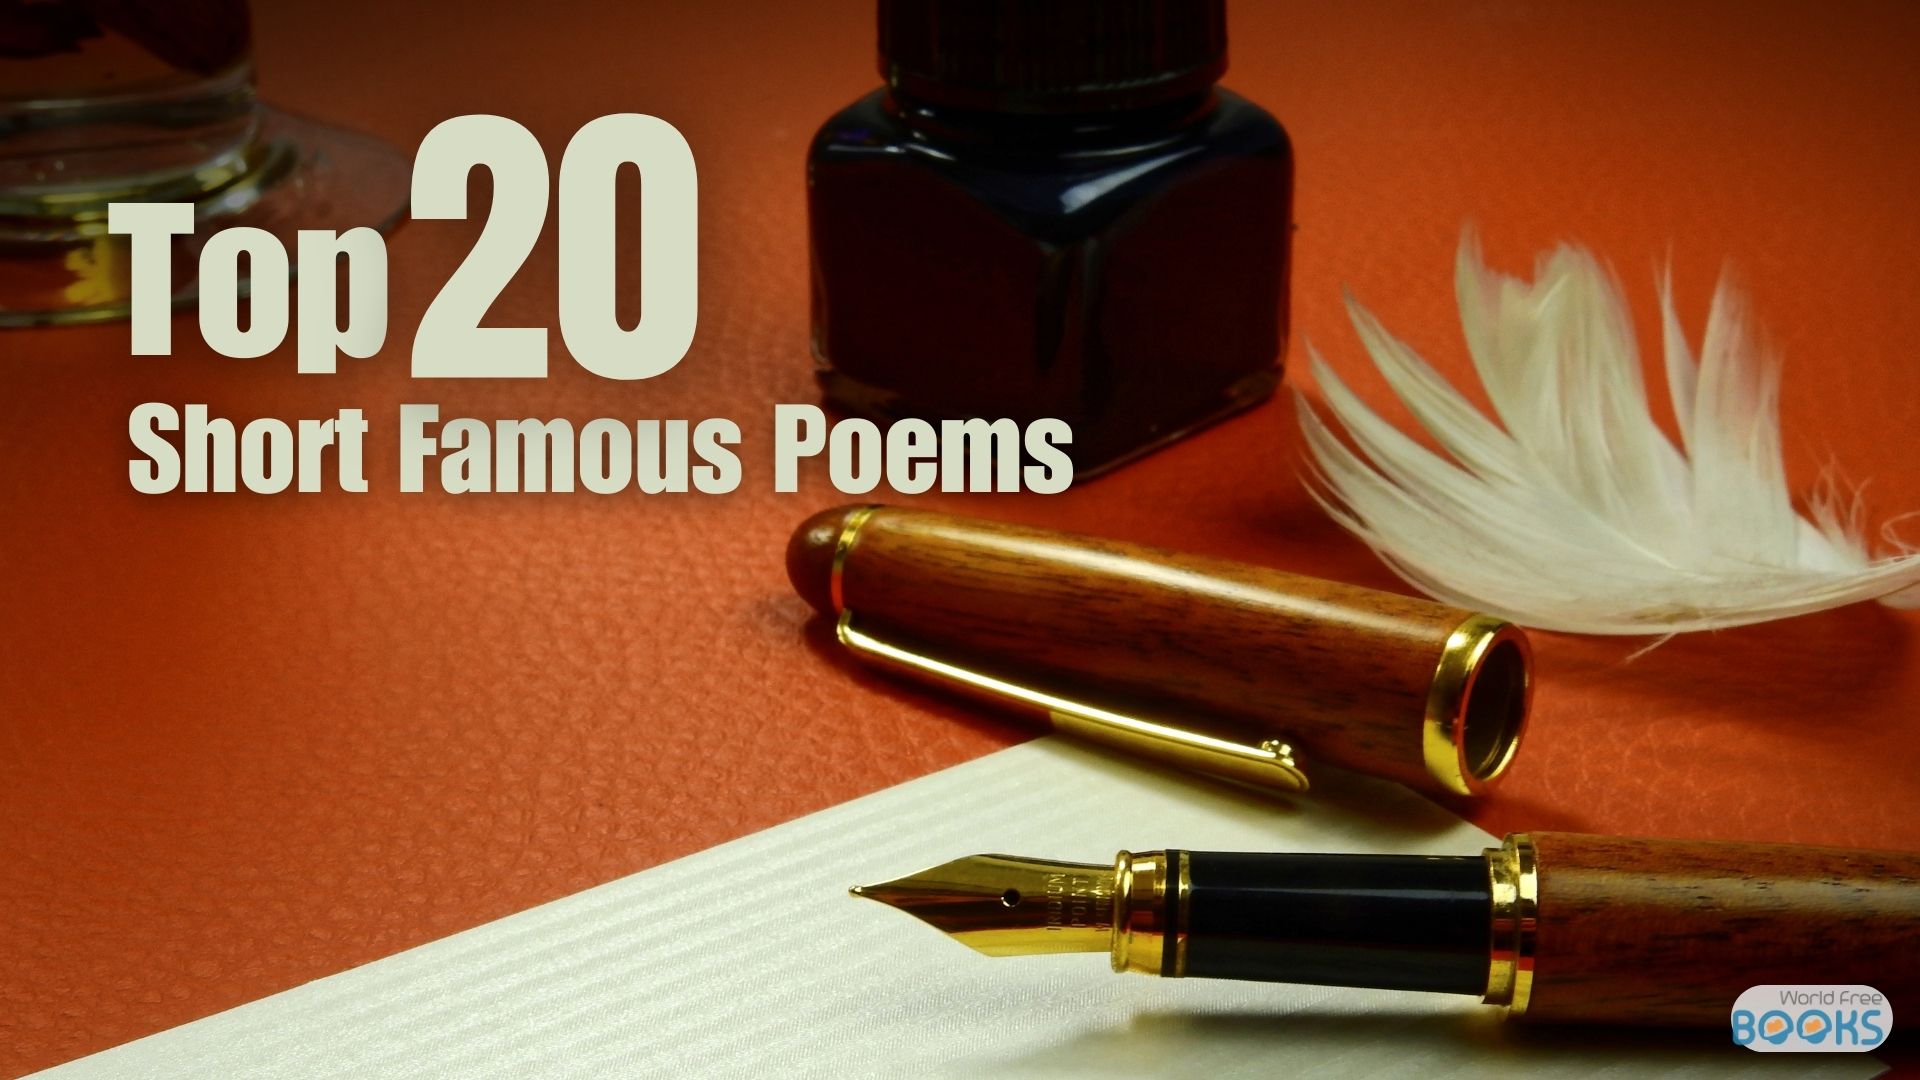 Top 20 Short Famous Poems